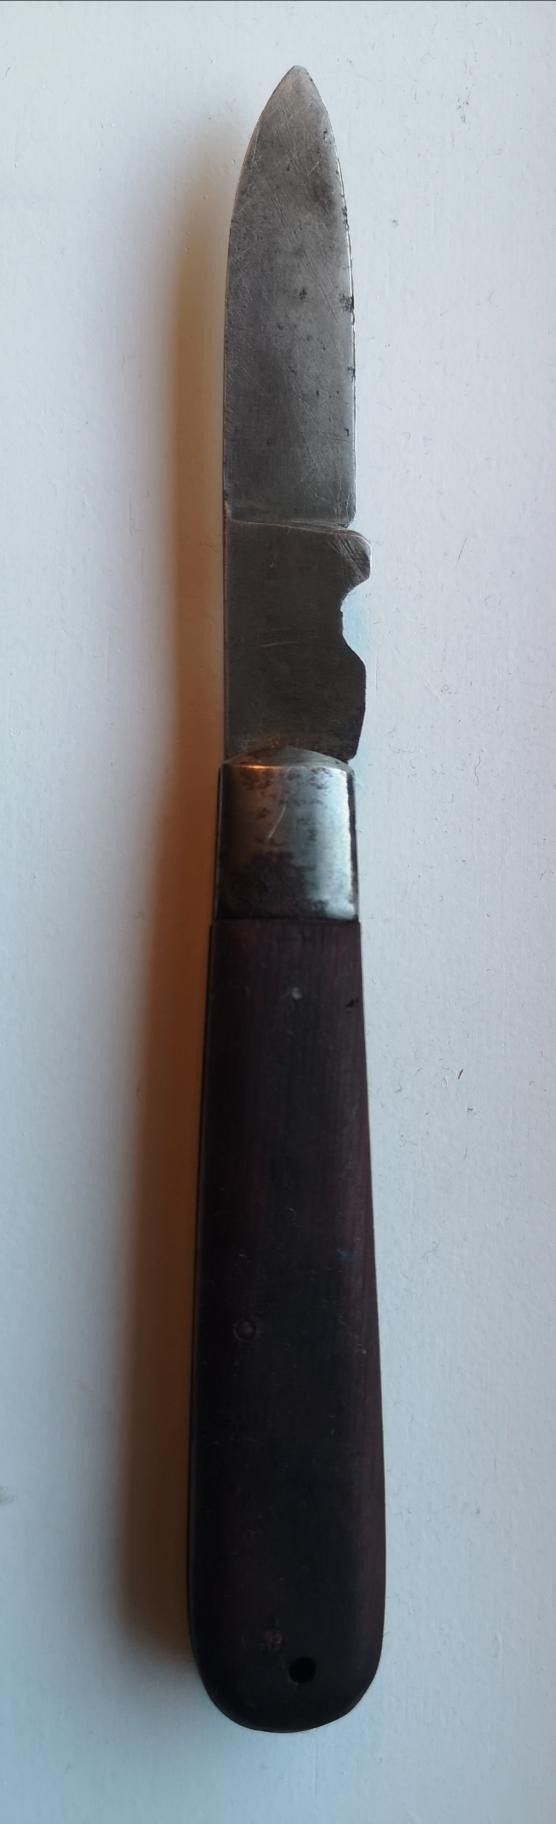 E. Solingen lommekniv / foldekniv | FINN torget